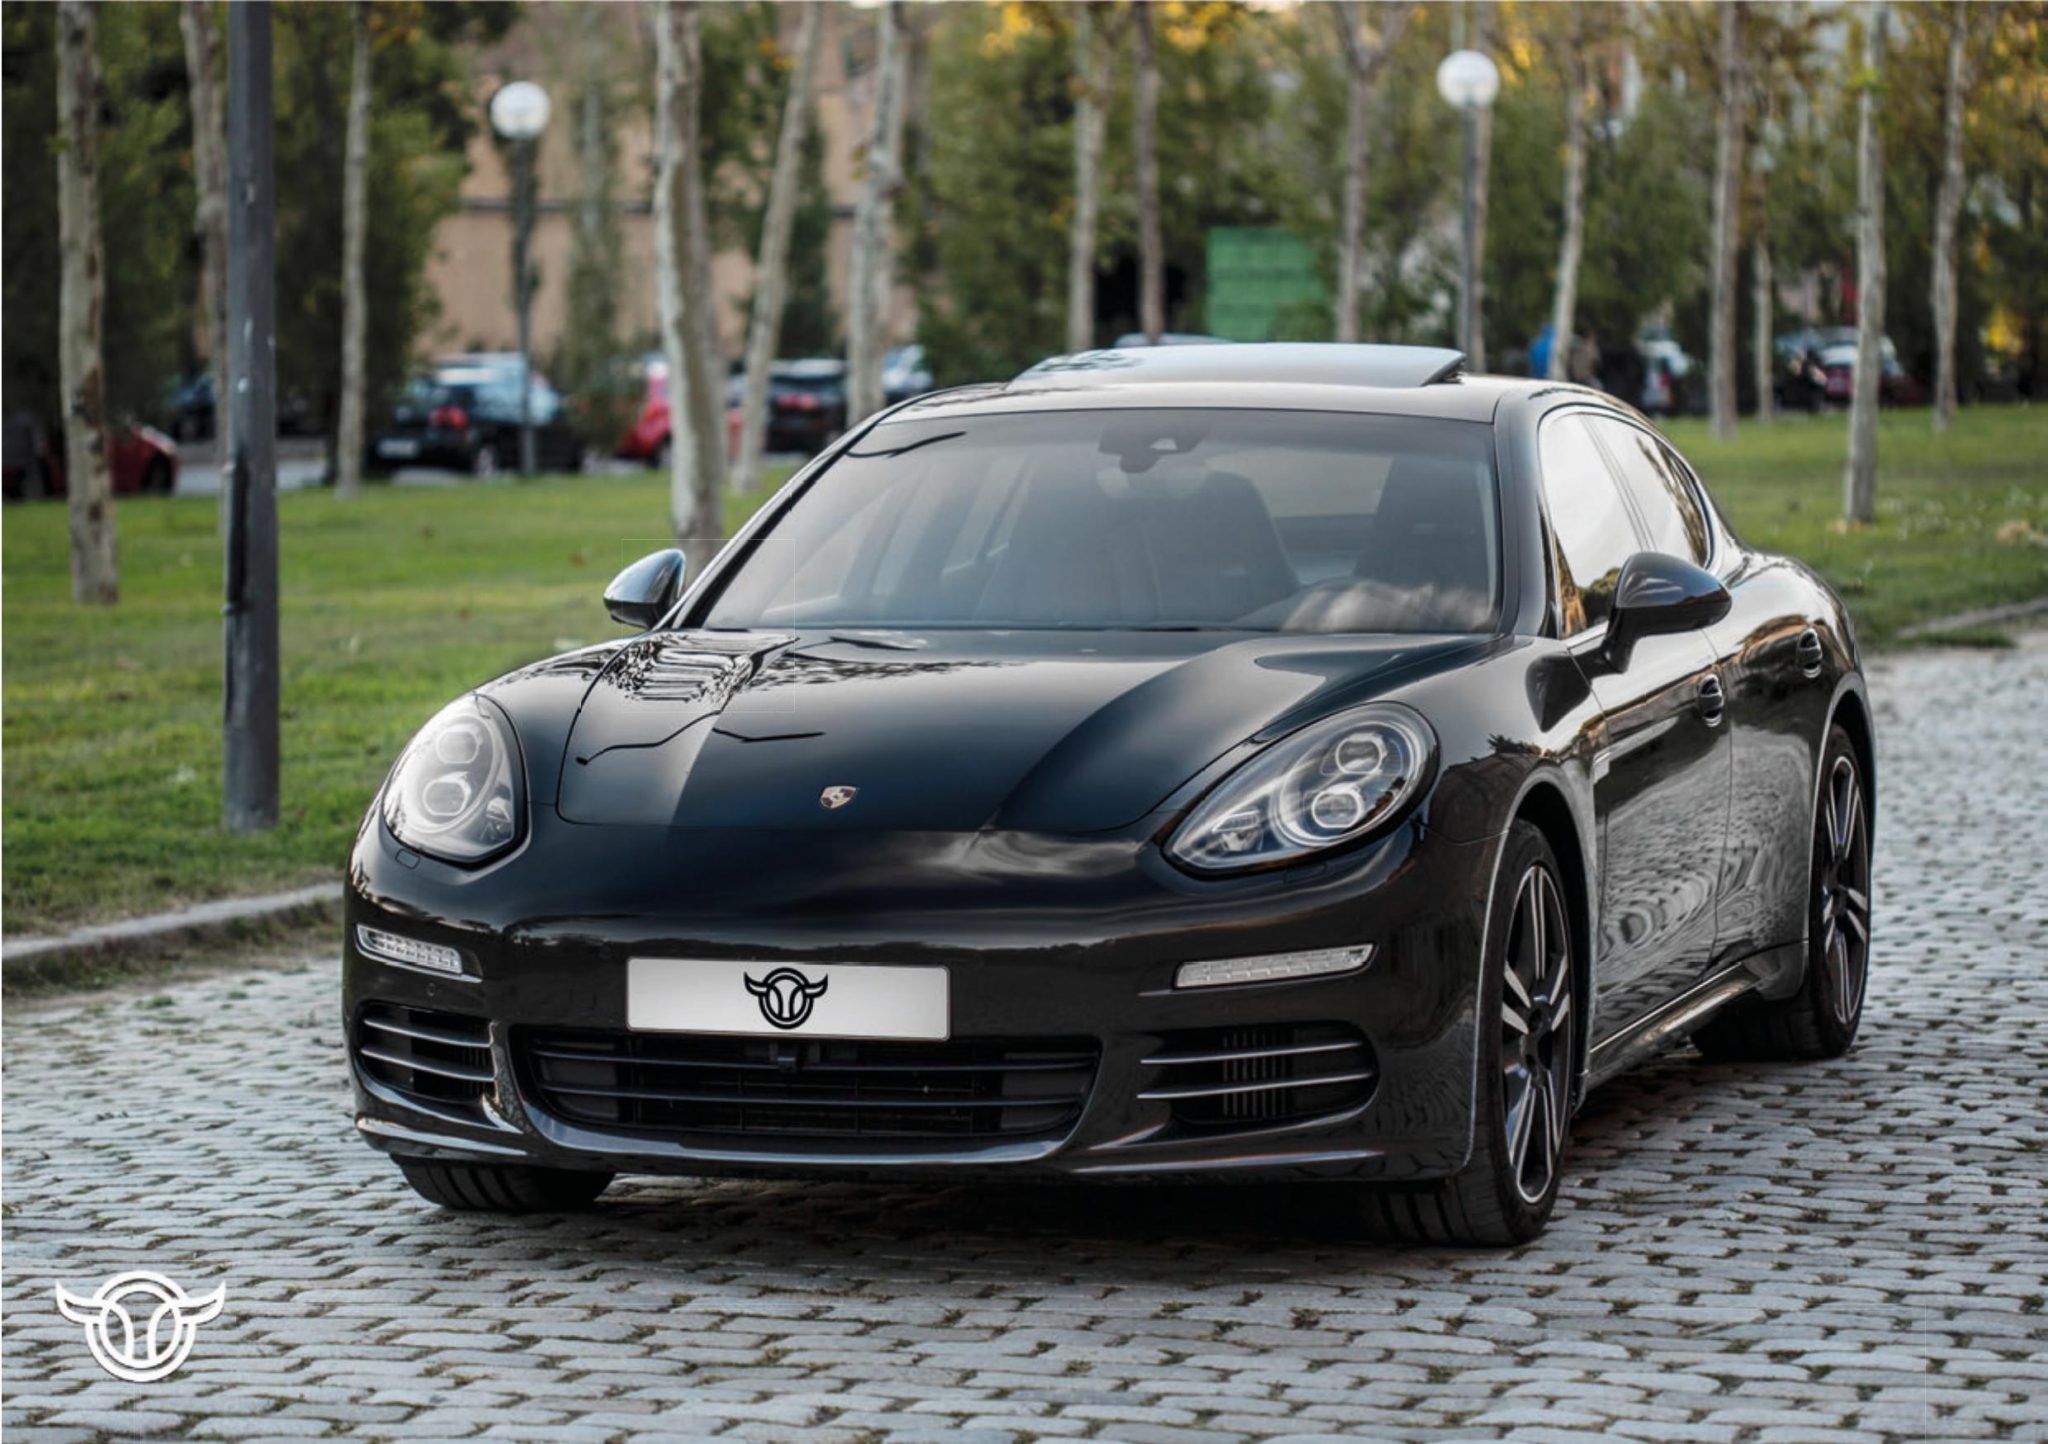 Porsche Panamera alquiler coches de lujo madrid marbella ibiza barcelona valencia